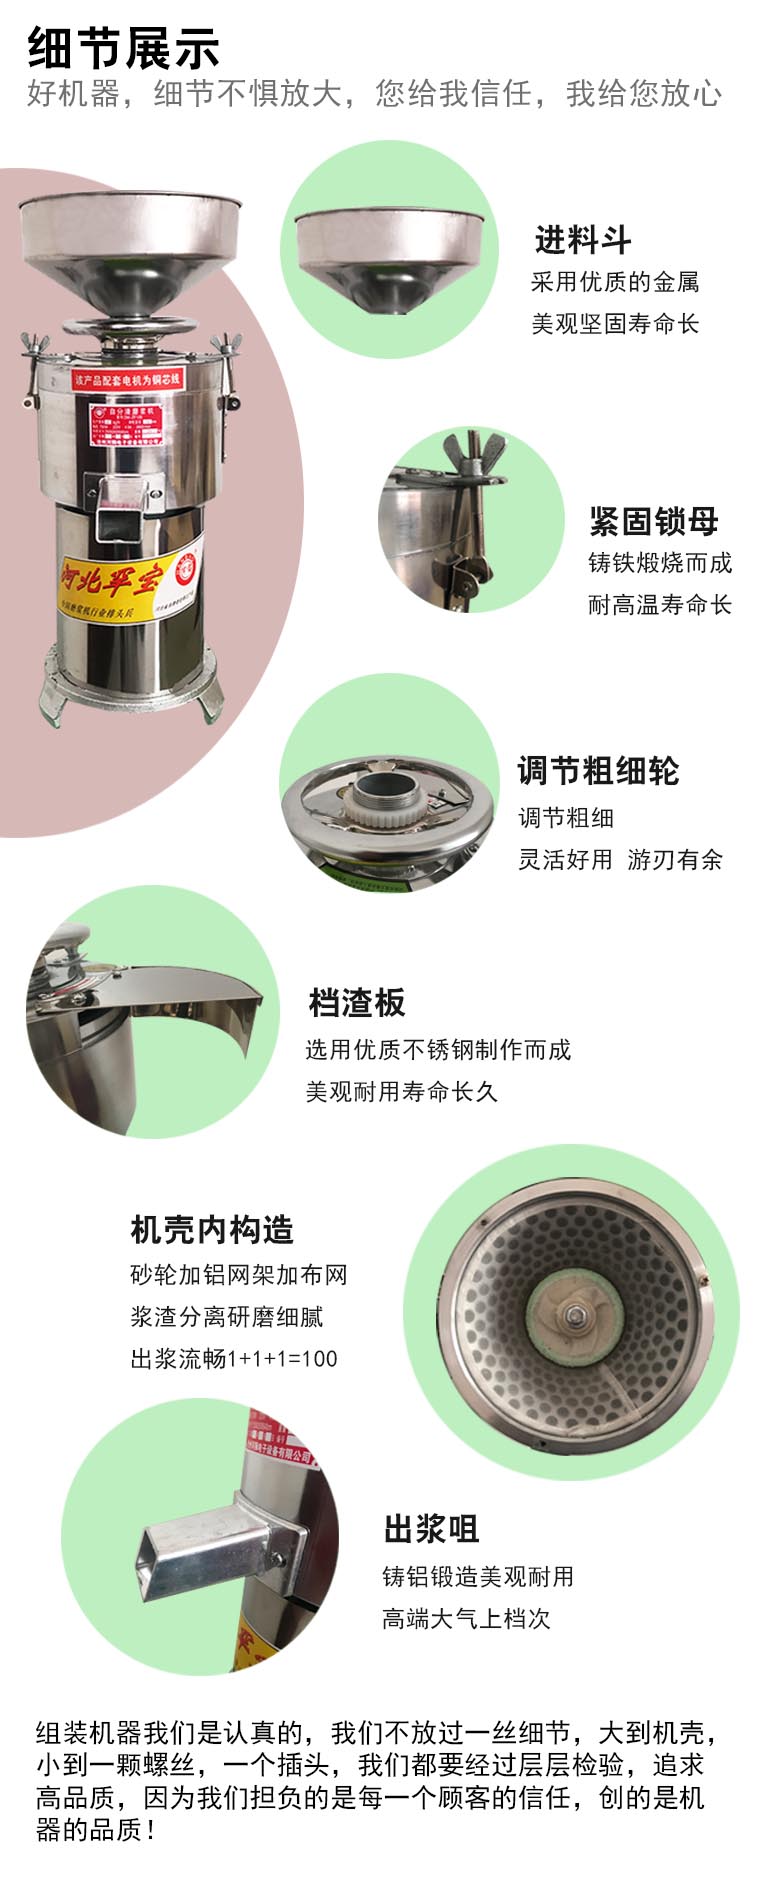 河獅大豆磨漿機產品細節